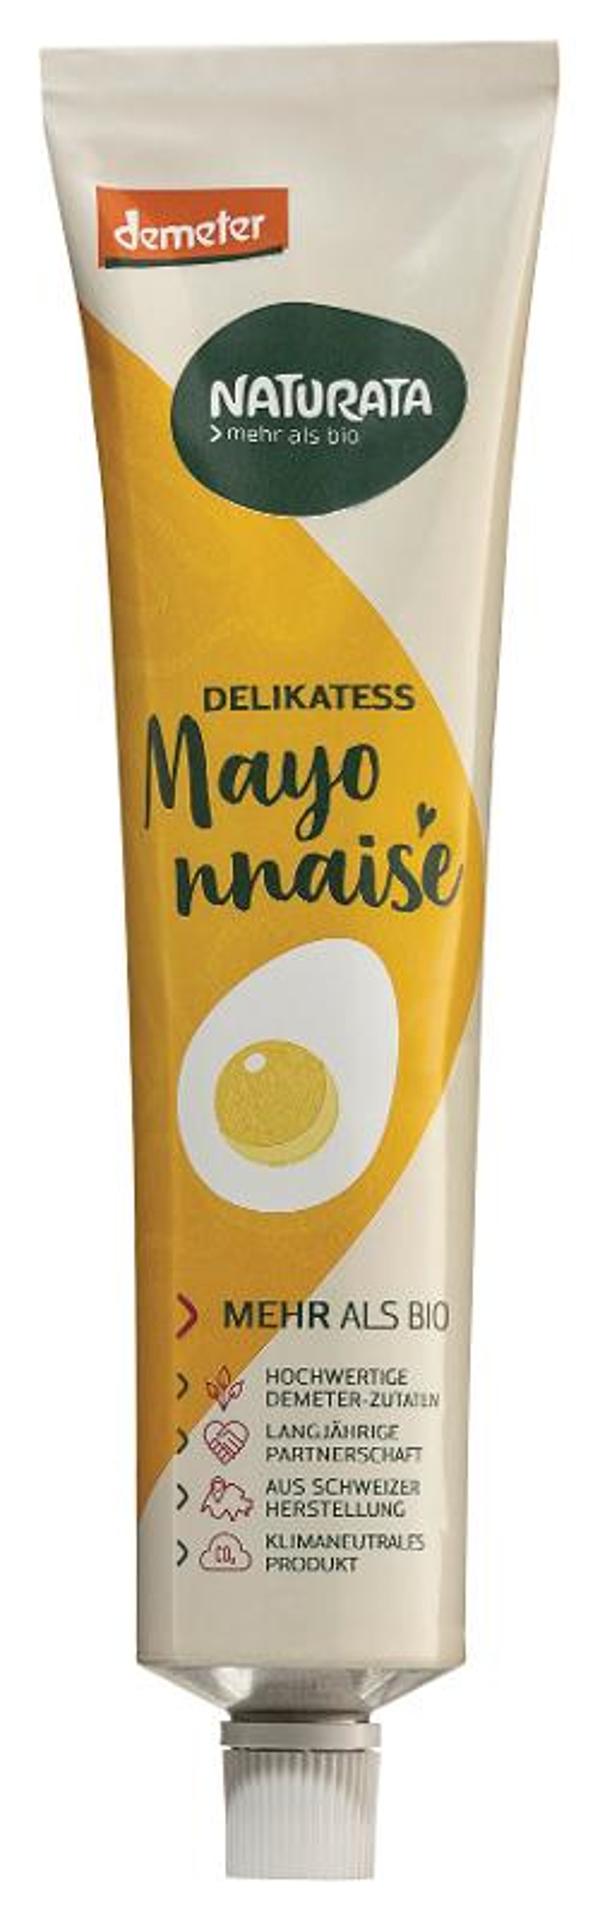 Produktfoto zu Mayonnaise in der Tube, 185ml